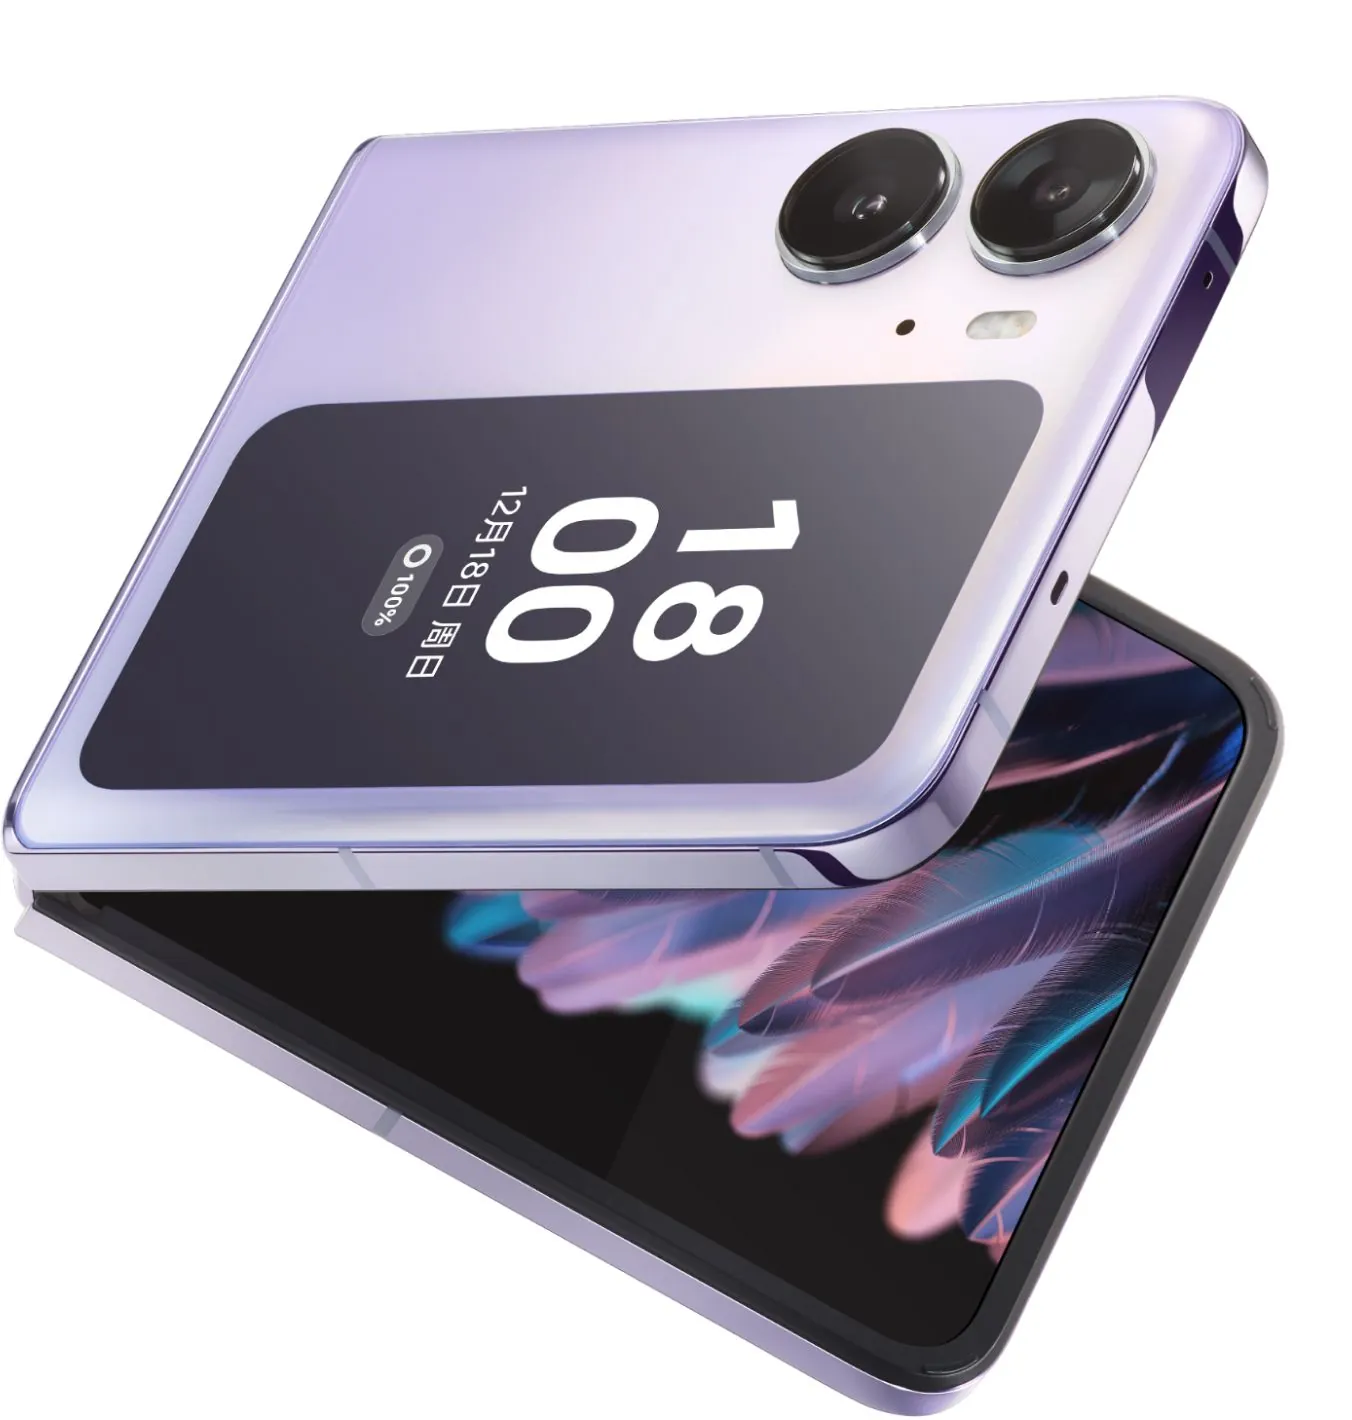  OPPO Encuentre N2 Flip Dual-SIM 256GB ROM + 8GB RAM (solo GSM   Sin CDMA) Teléfono inteligente 5G desbloqueado de fábrica (negro astral) -  Versión internacional : Celulares y Accesorios